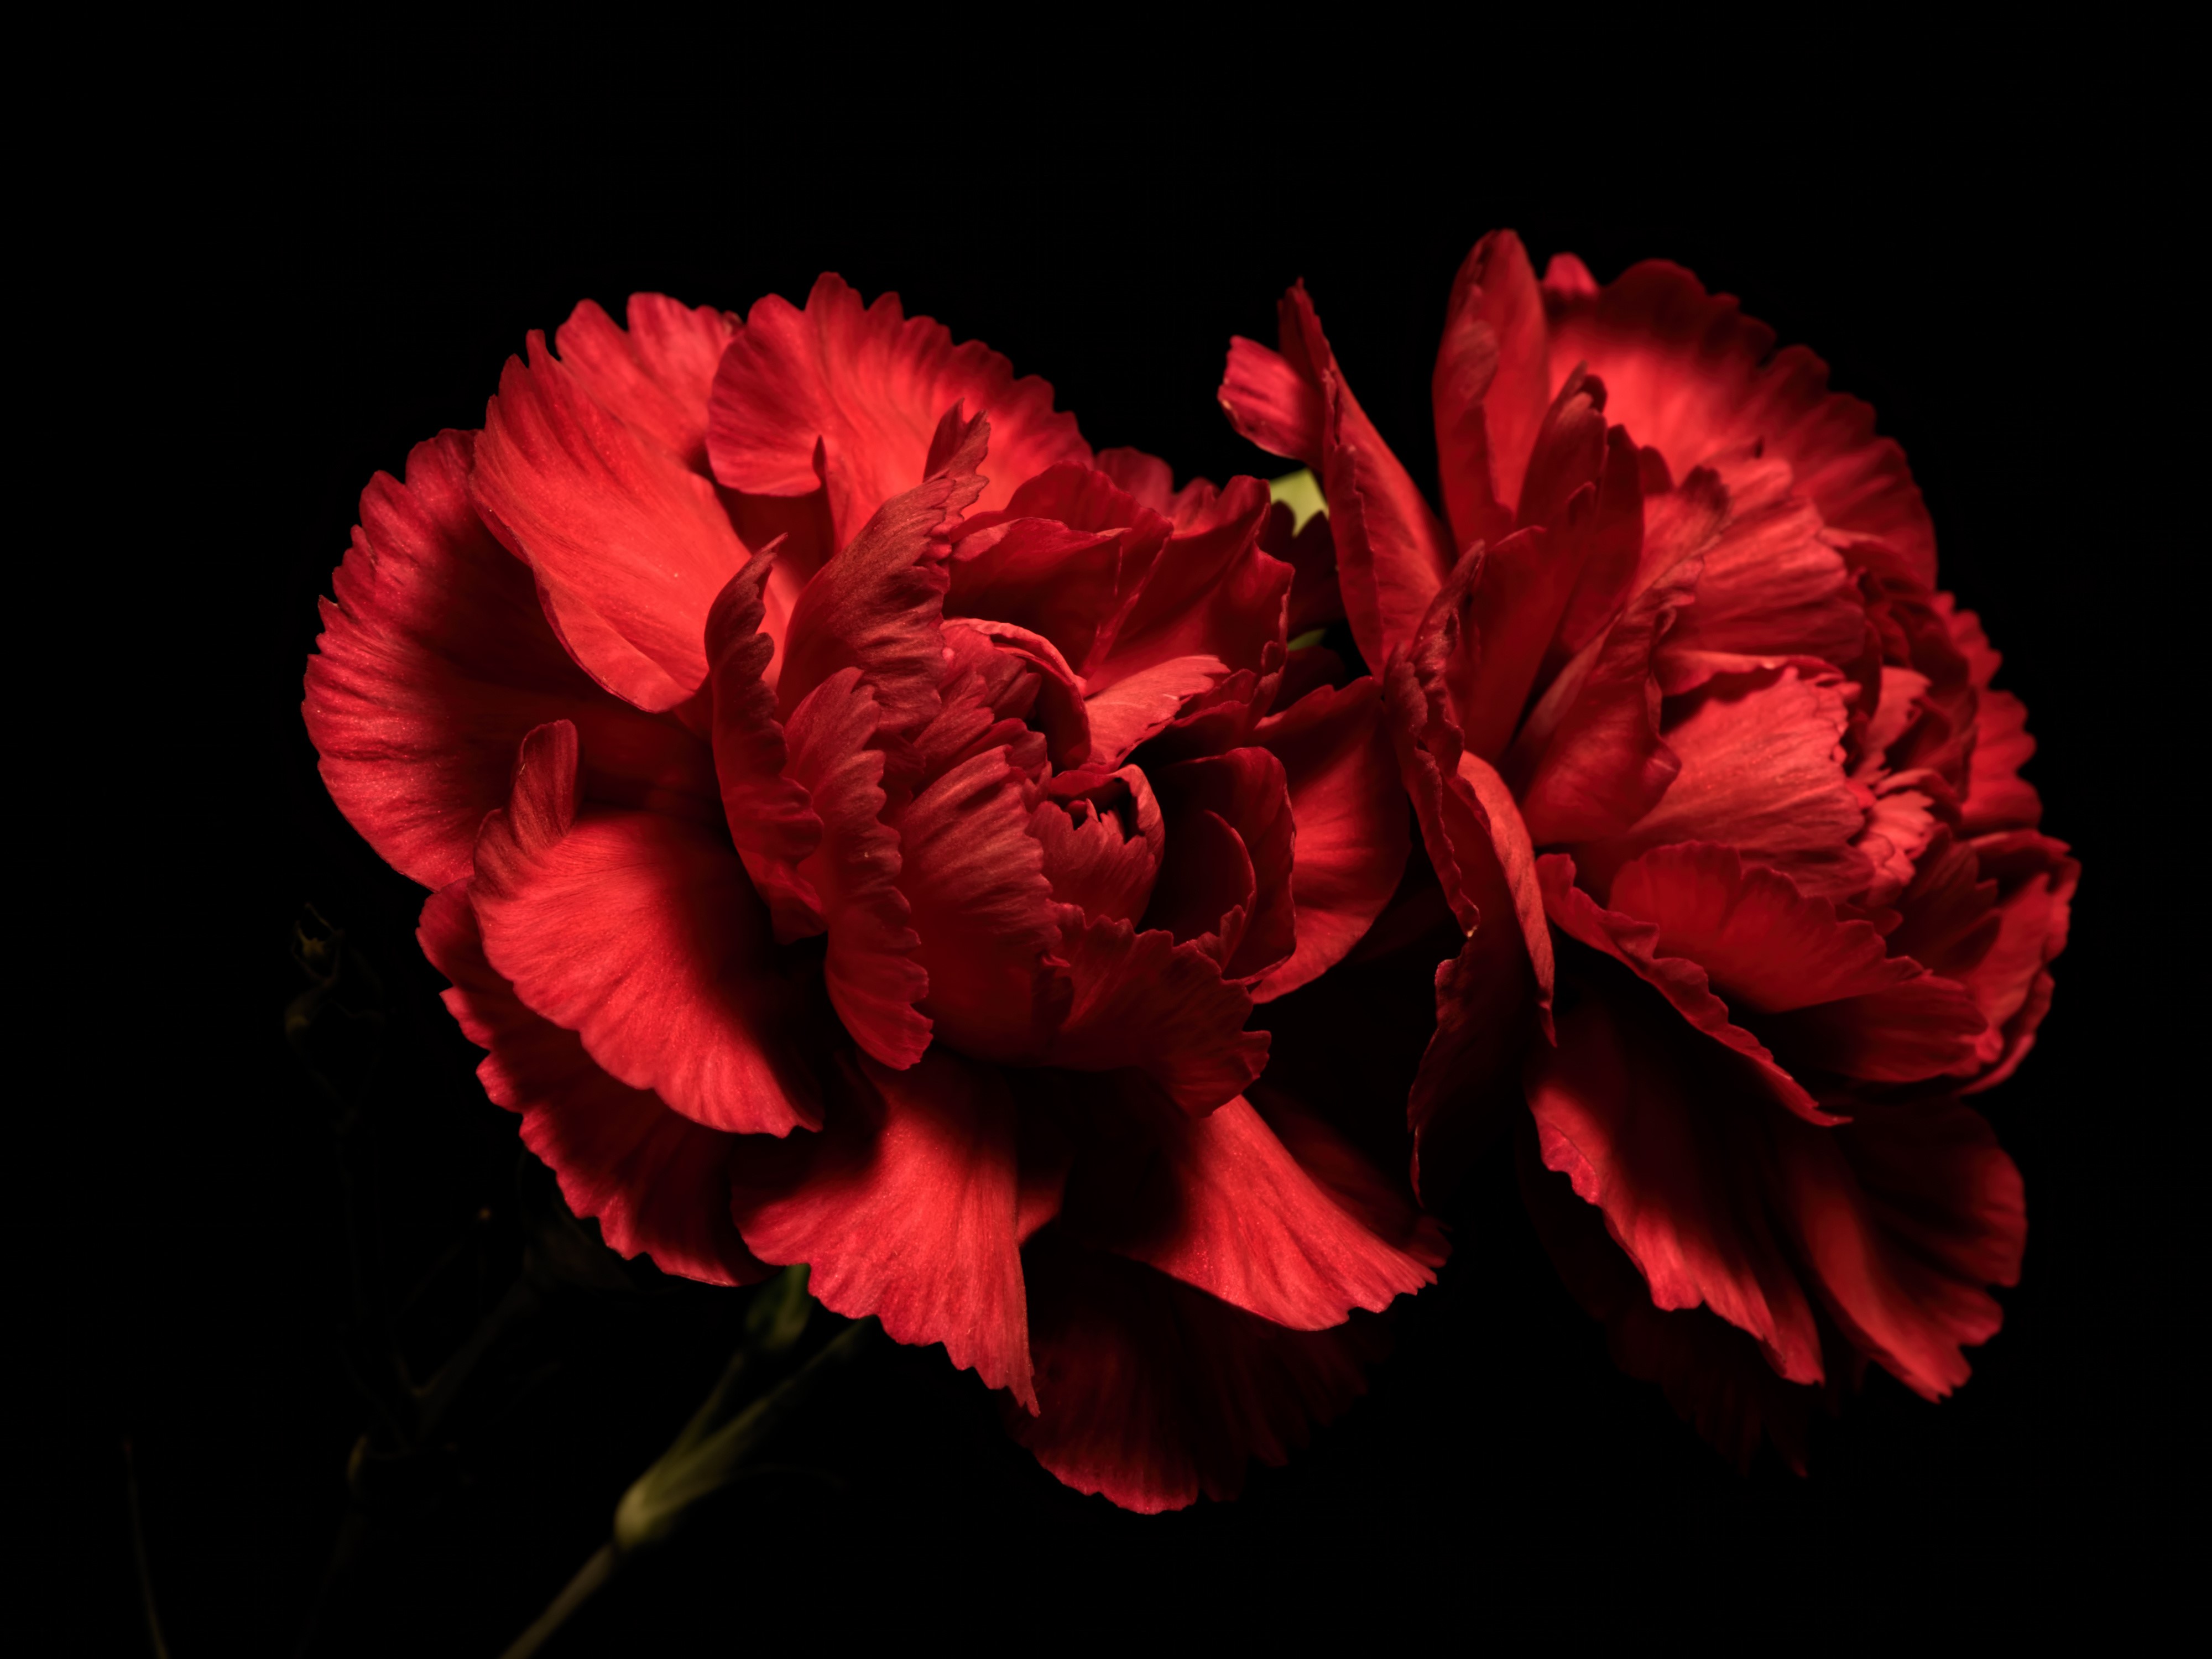 Hình ảnh tuyệt đẹp về hoa phăng đỏ